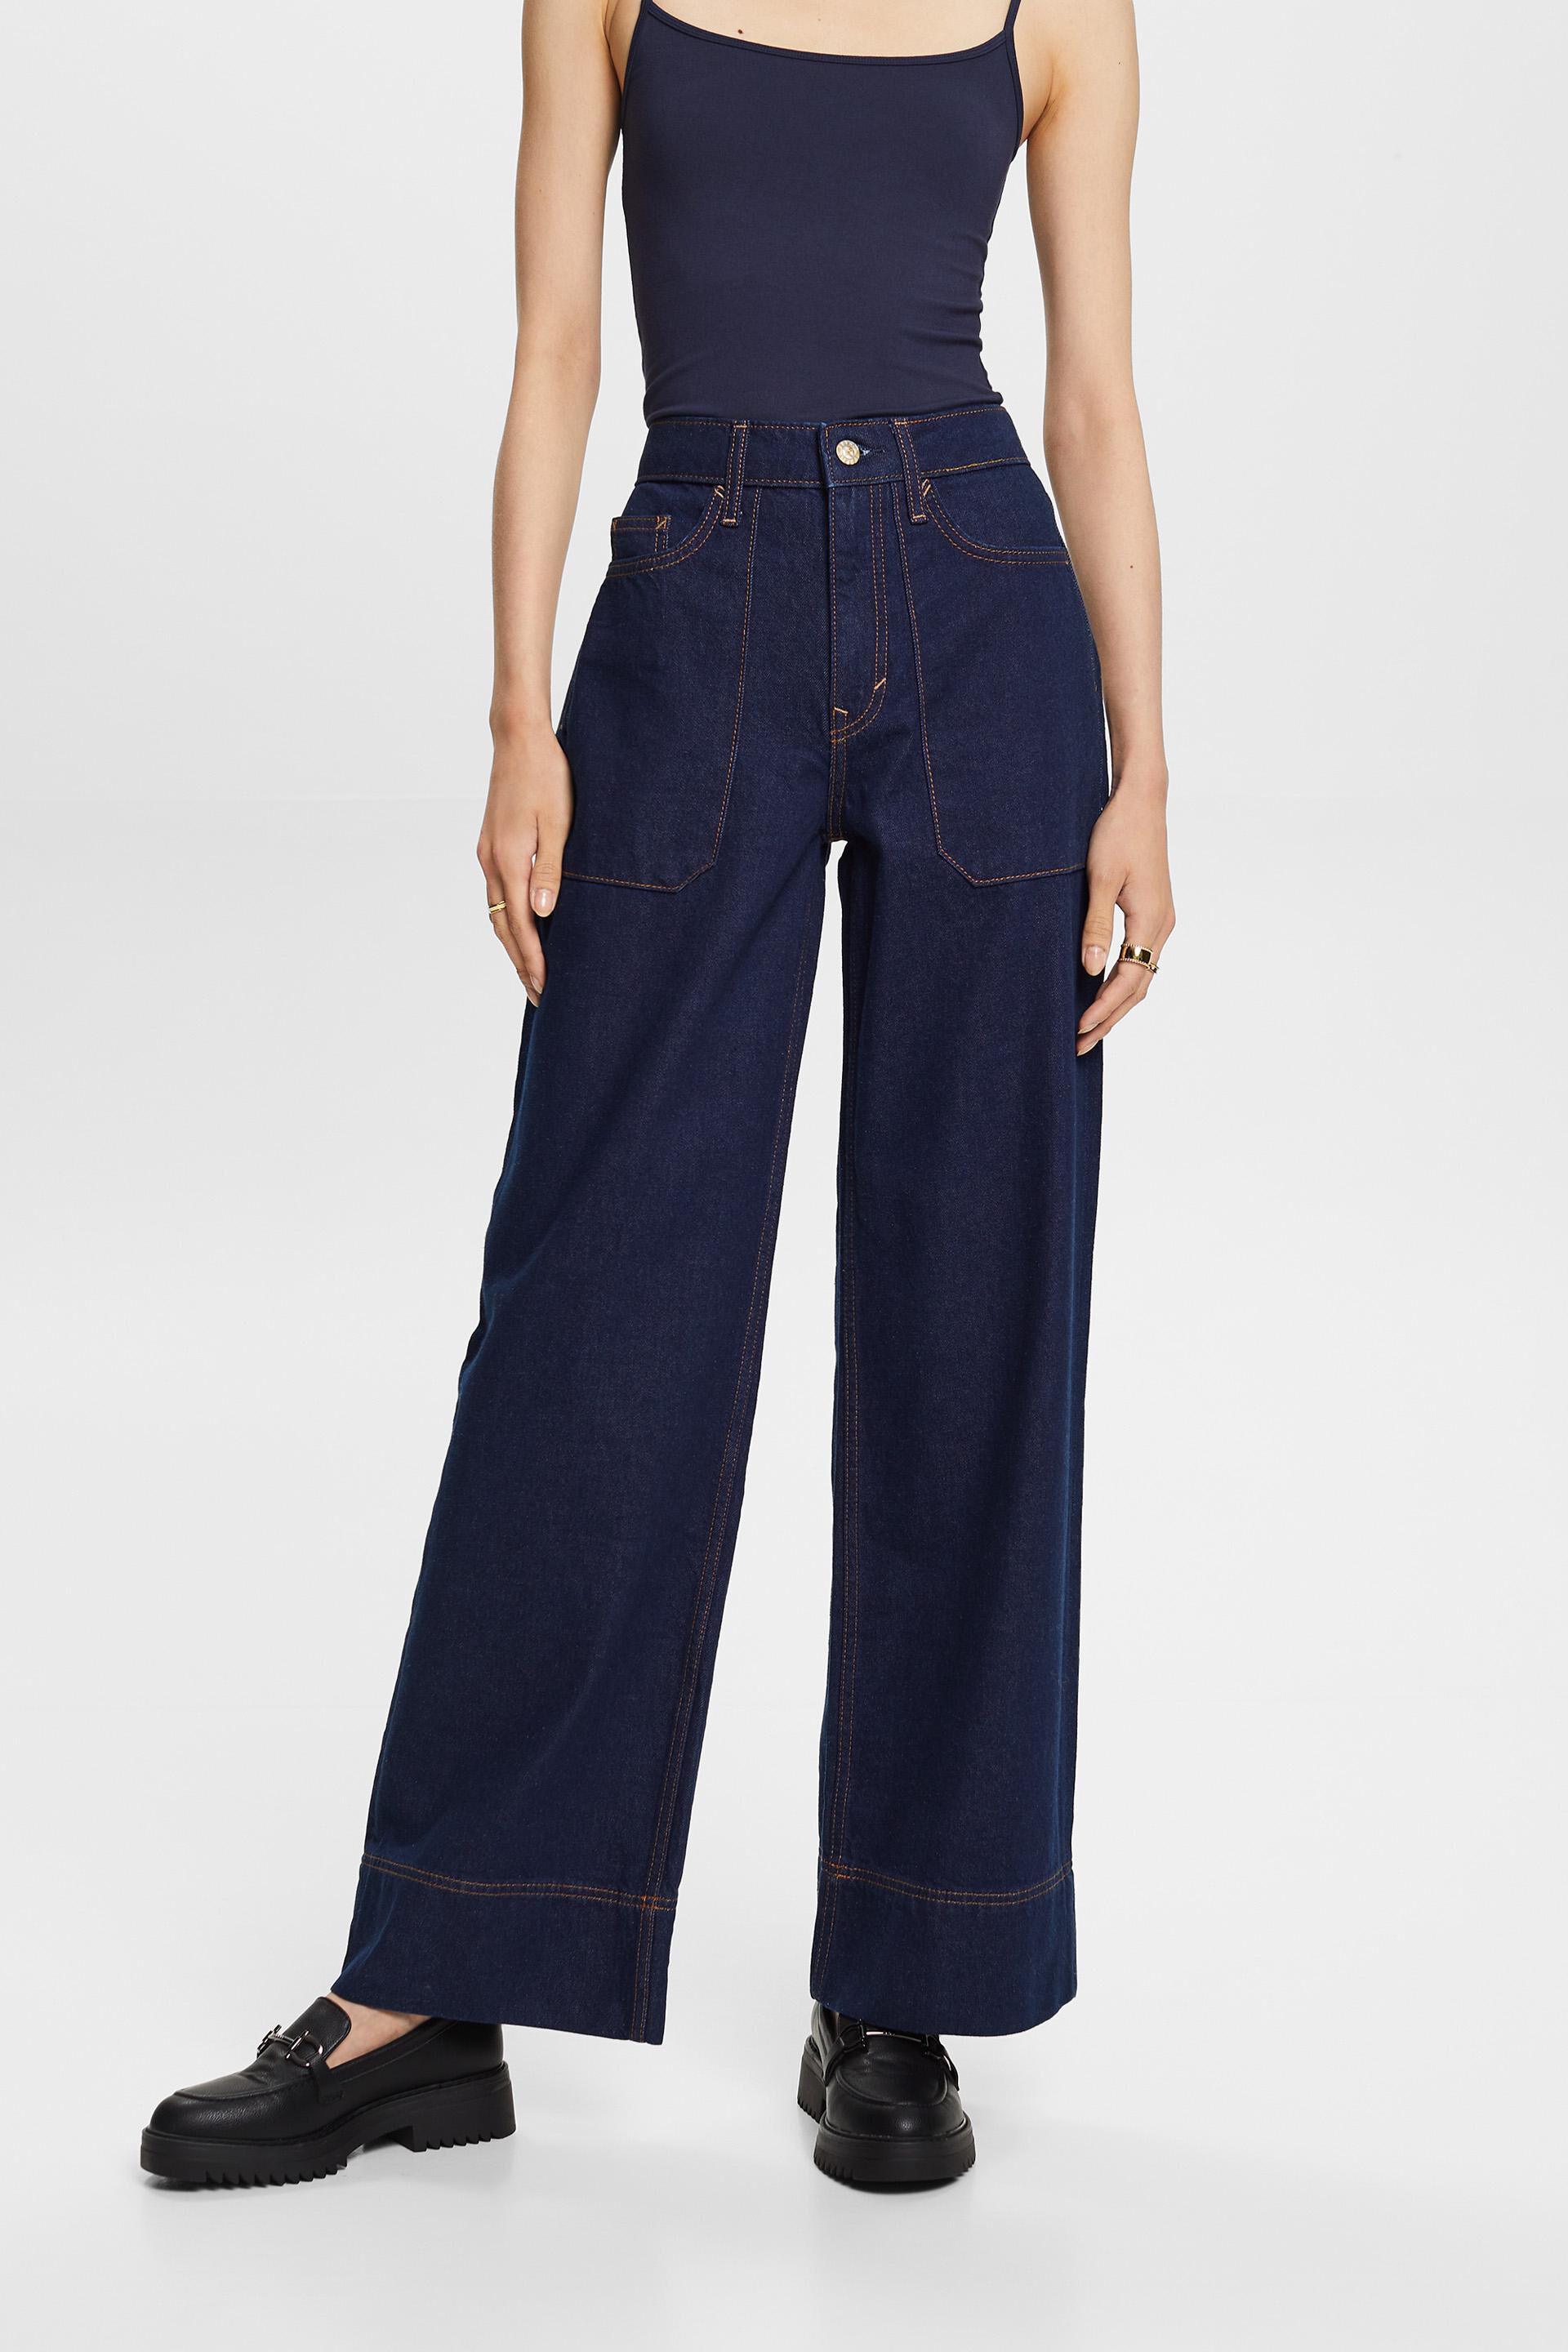 Esprit Damen Retro wide leg jeans, 100% cotton